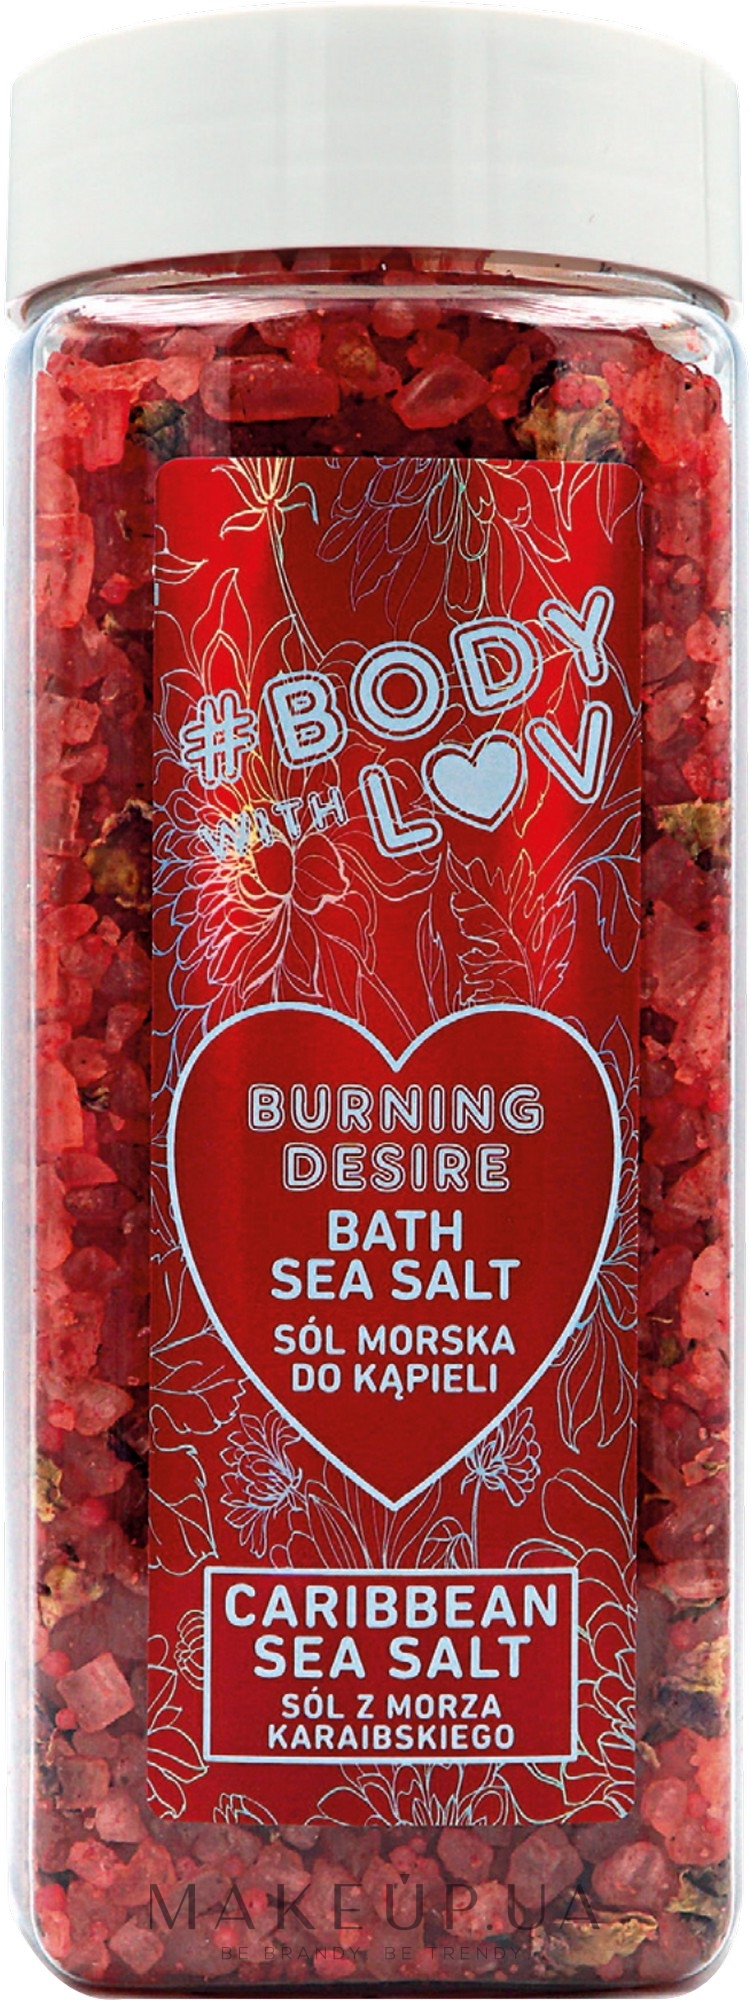 Сіль для ванн - New Anna Cosmetics Body With Luv Sea Salt For Bath Burning Desire — фото 500g